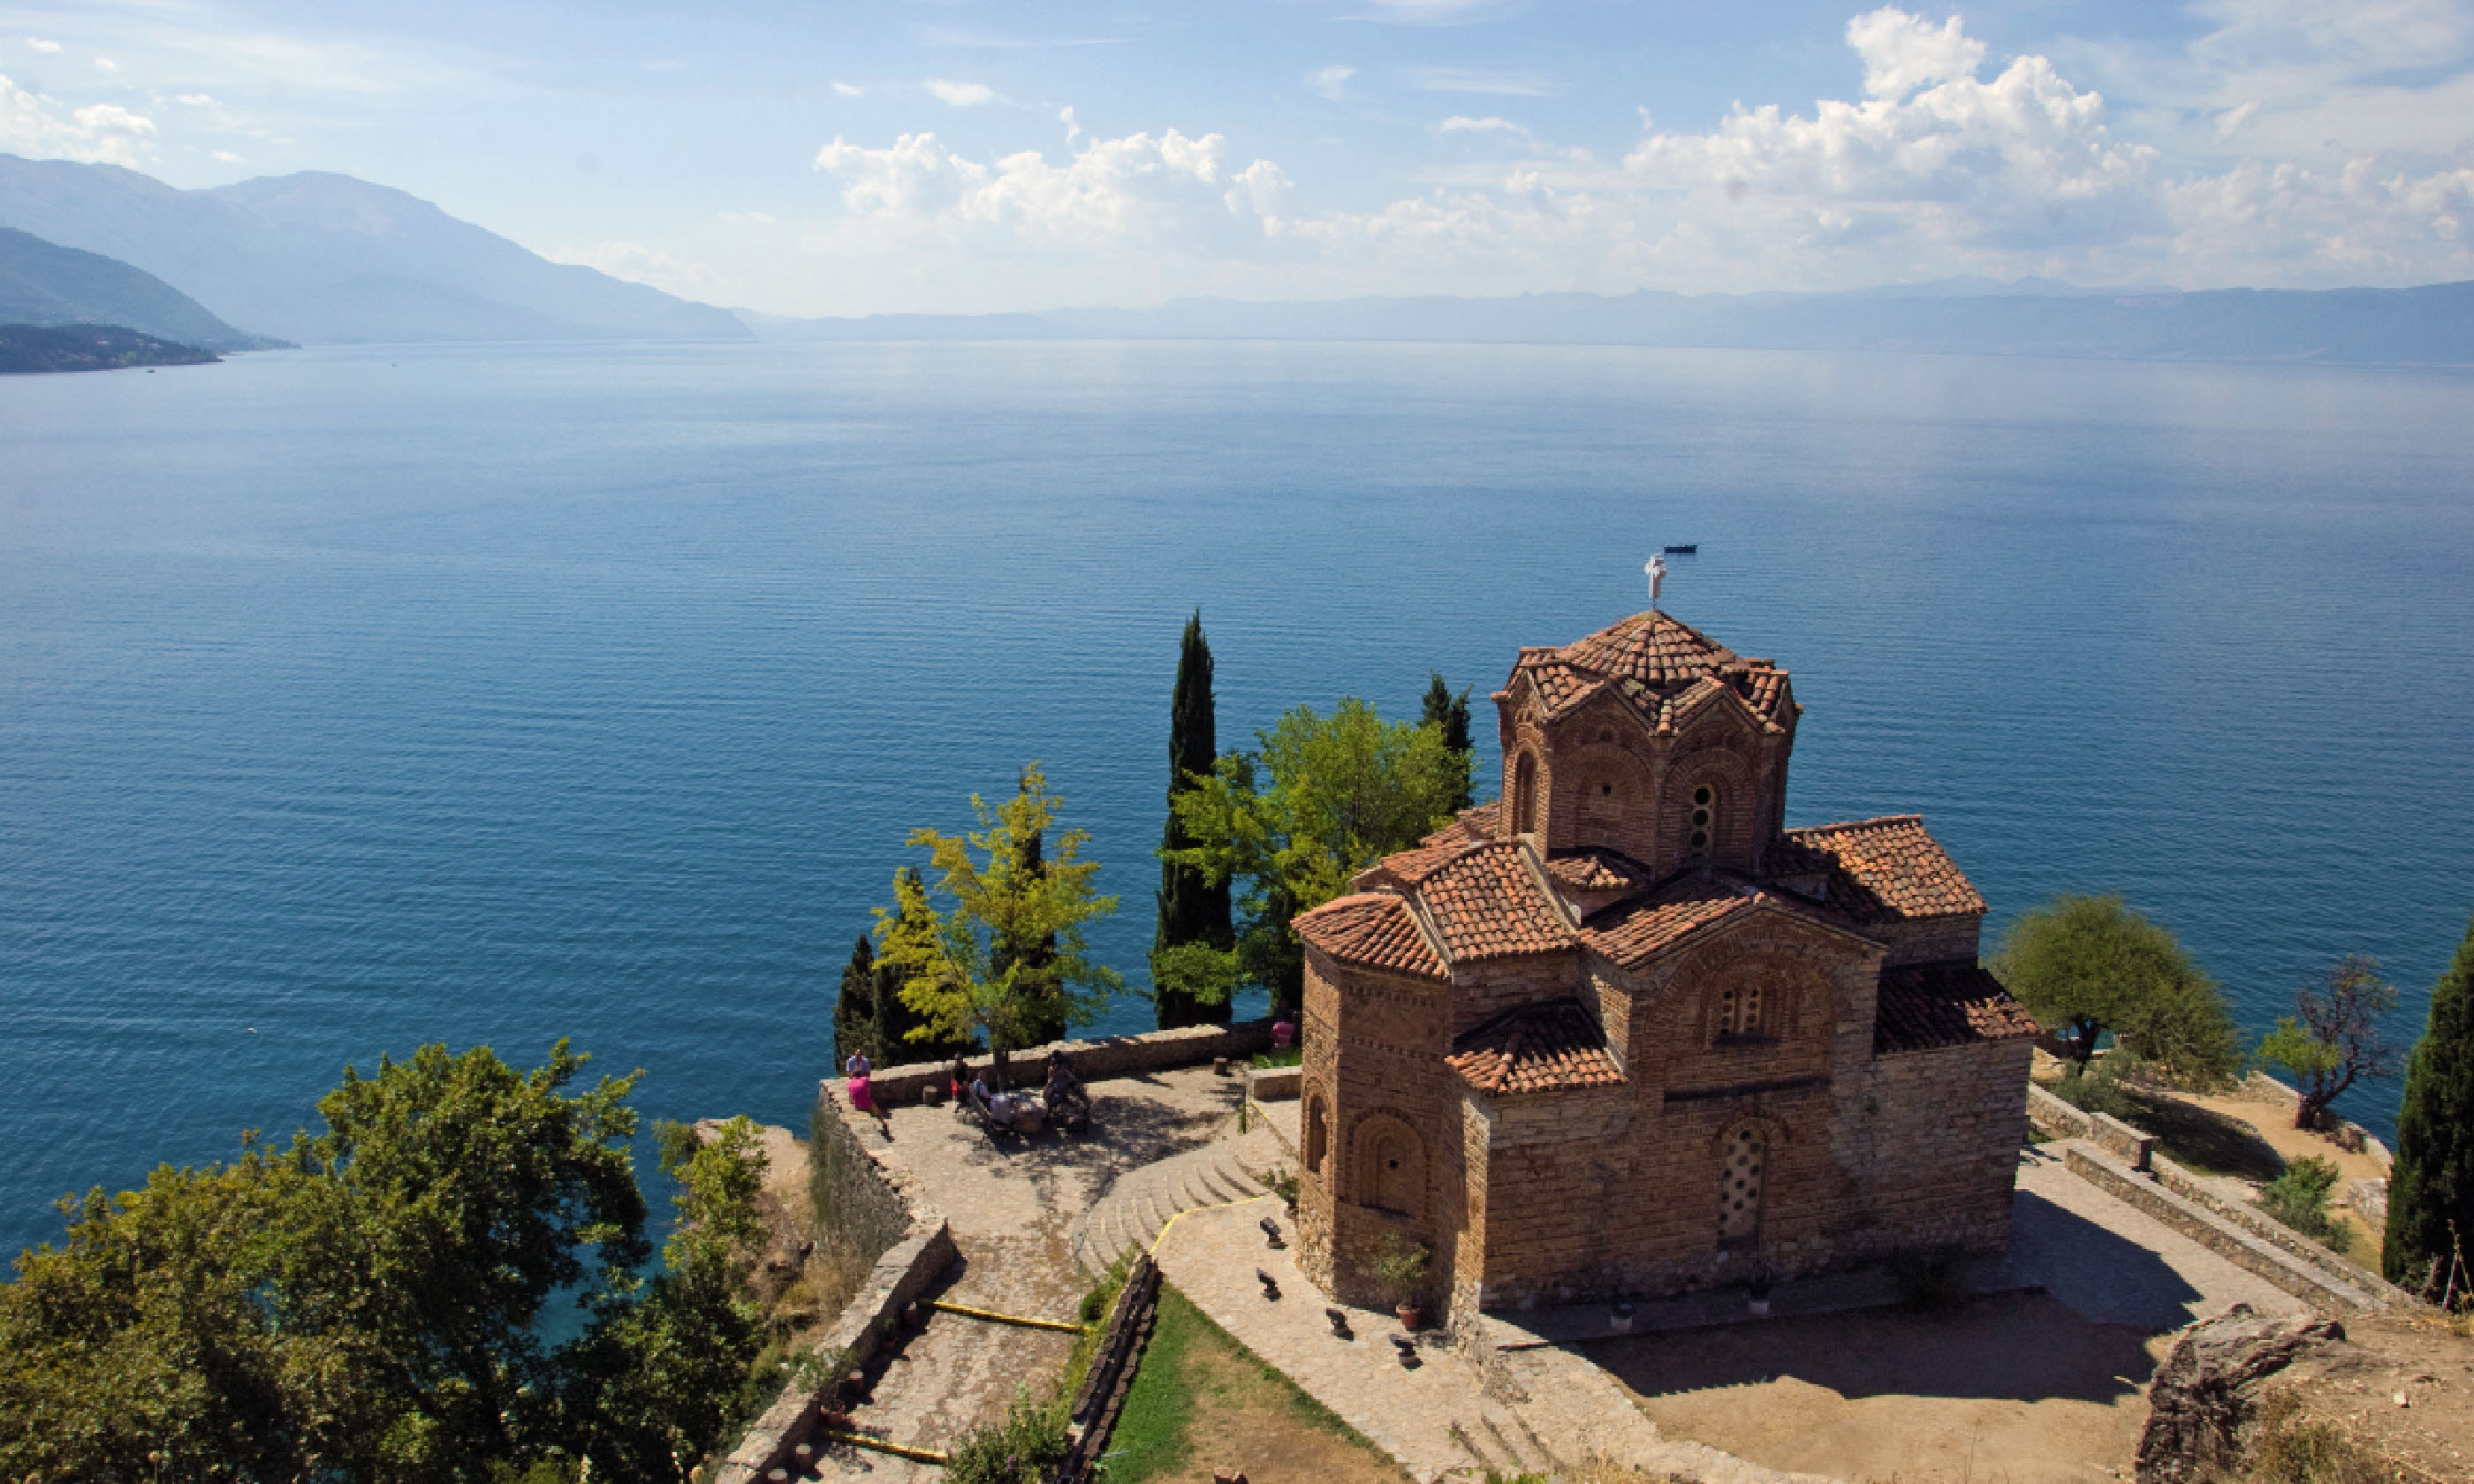 St John at Kaneo Church overlooking Lake Ohrid, Macedonia (Lyn Hughes)